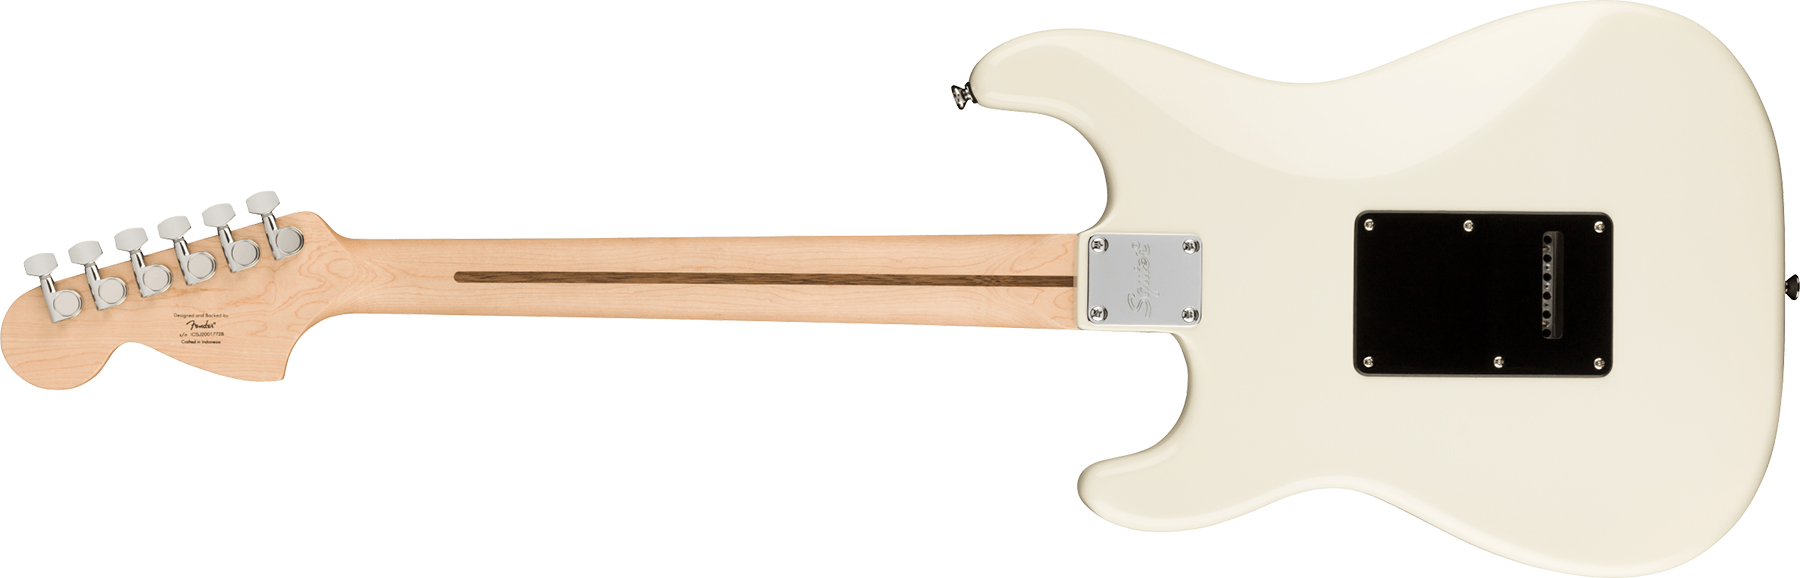 Squier Strat Affinity 2021 Hh Trem Lau - Olympic White - Guitare Électrique Forme Str - Variation 1